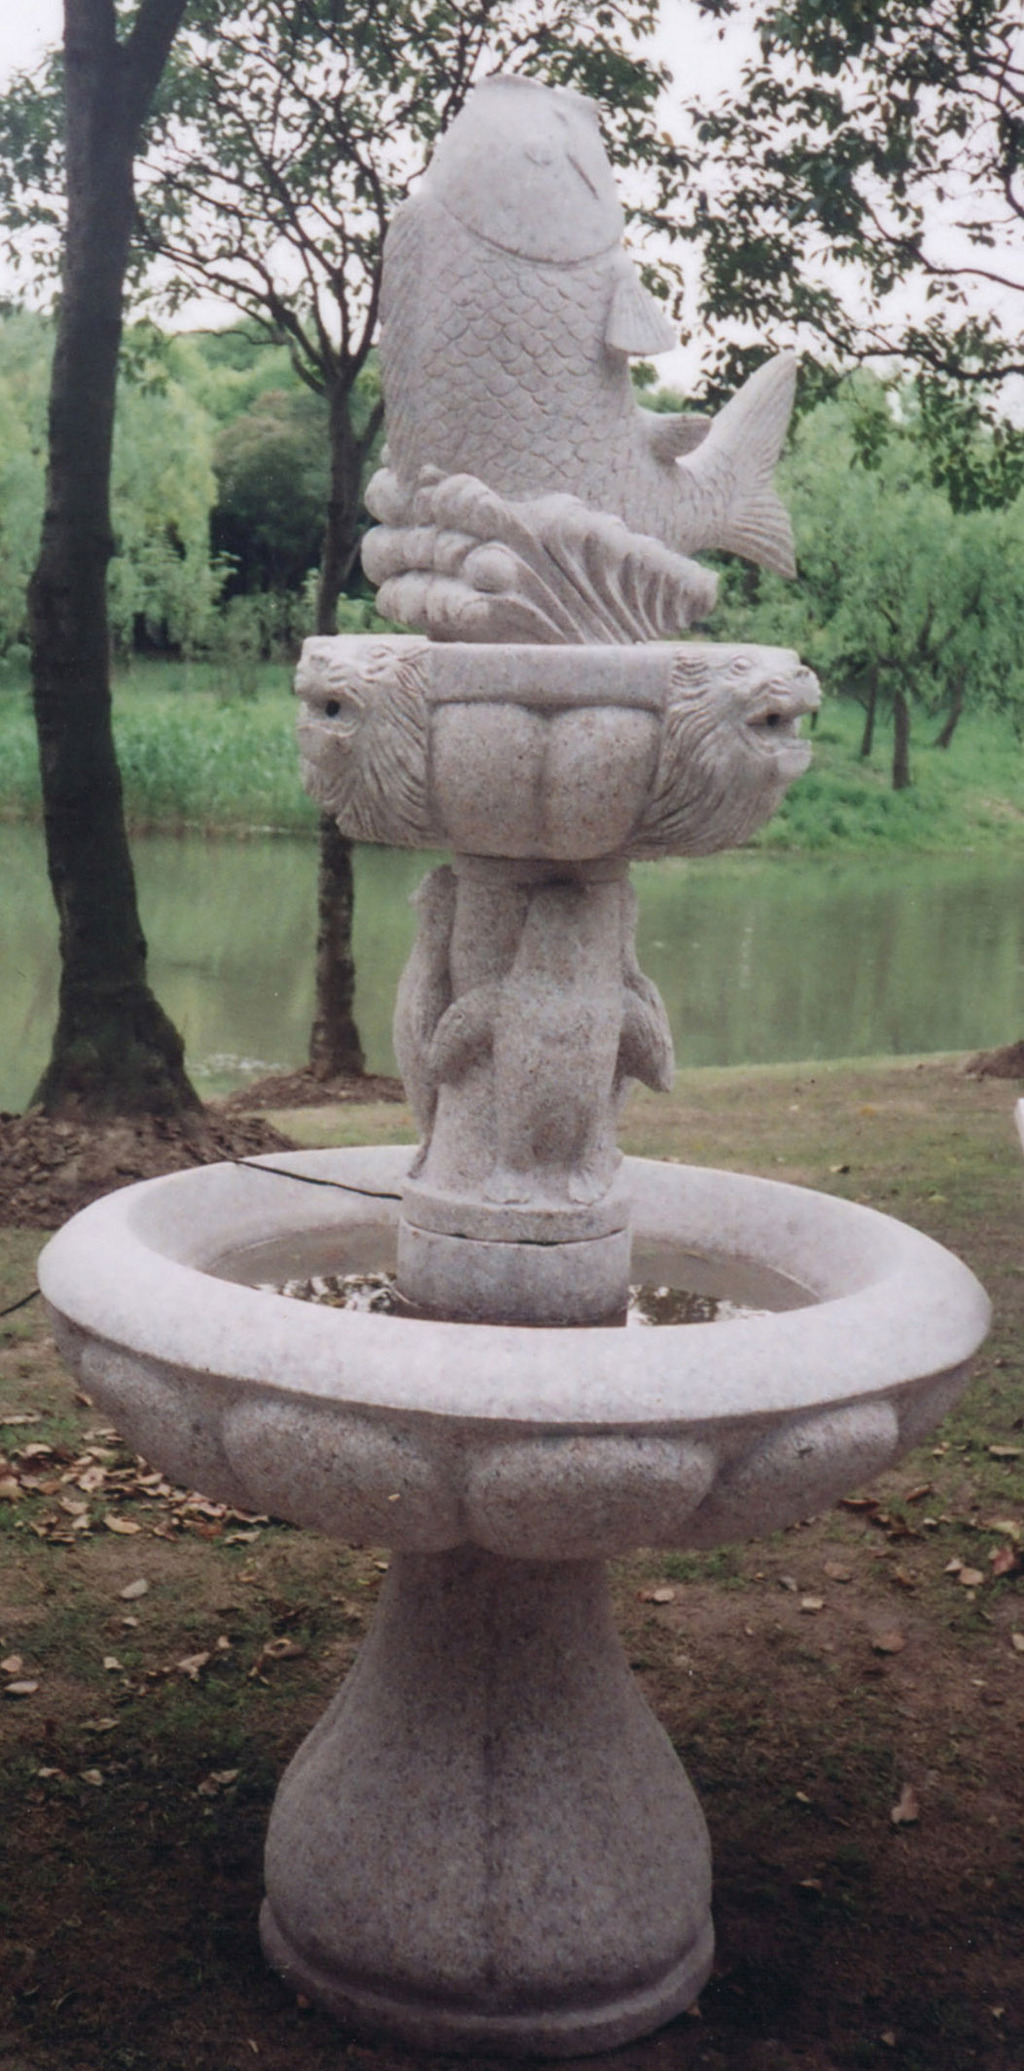 石雕工艺品,石材雕刻,喷水池